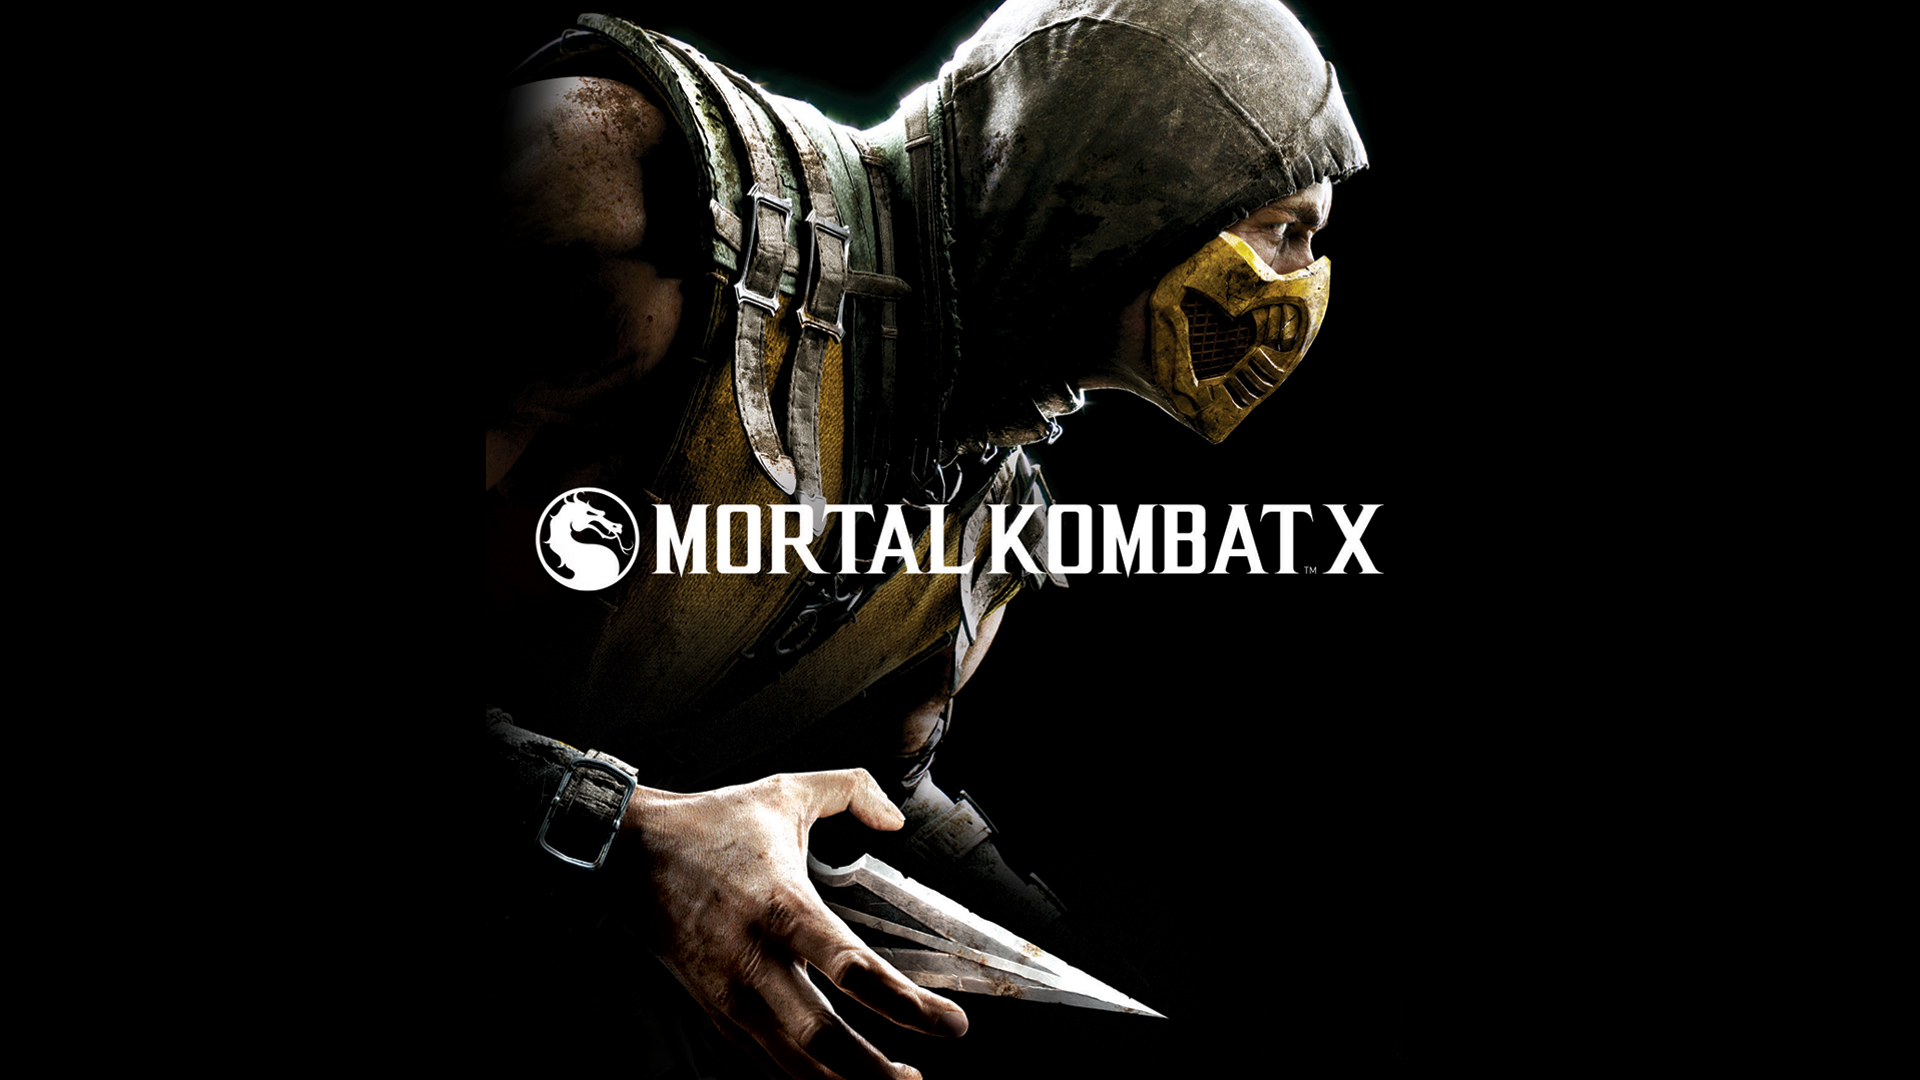 Wallpaper Mortal Kombat x, Mortal Kombat, Scorpion, Kitana, Games,  Background - Download Free Image